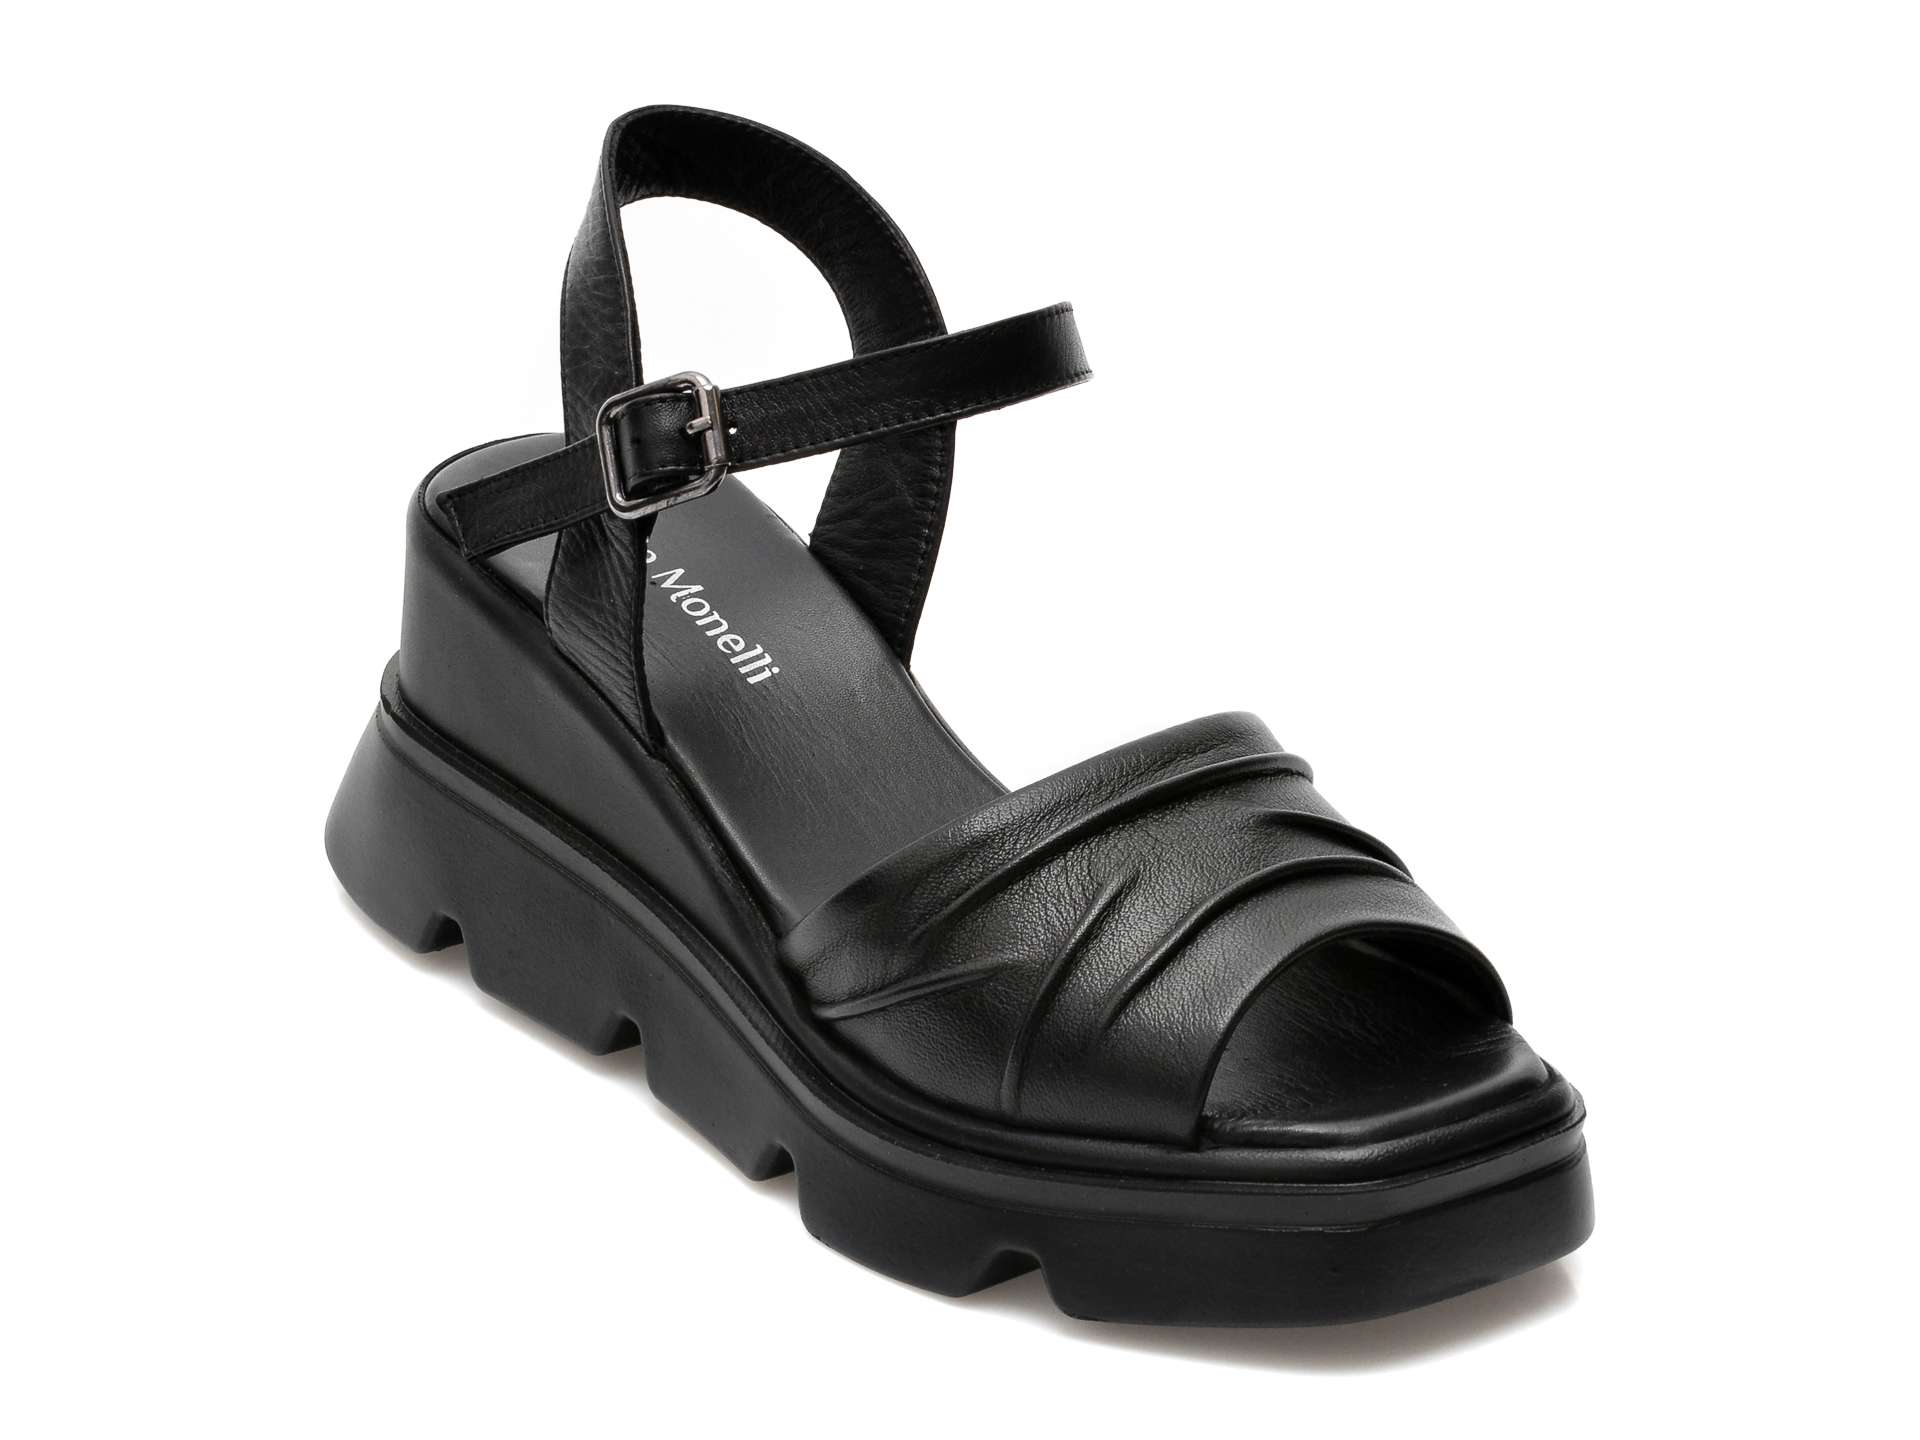 Sandale FABIO MONELLI negre, 778, din piele naturala /femei/sandale